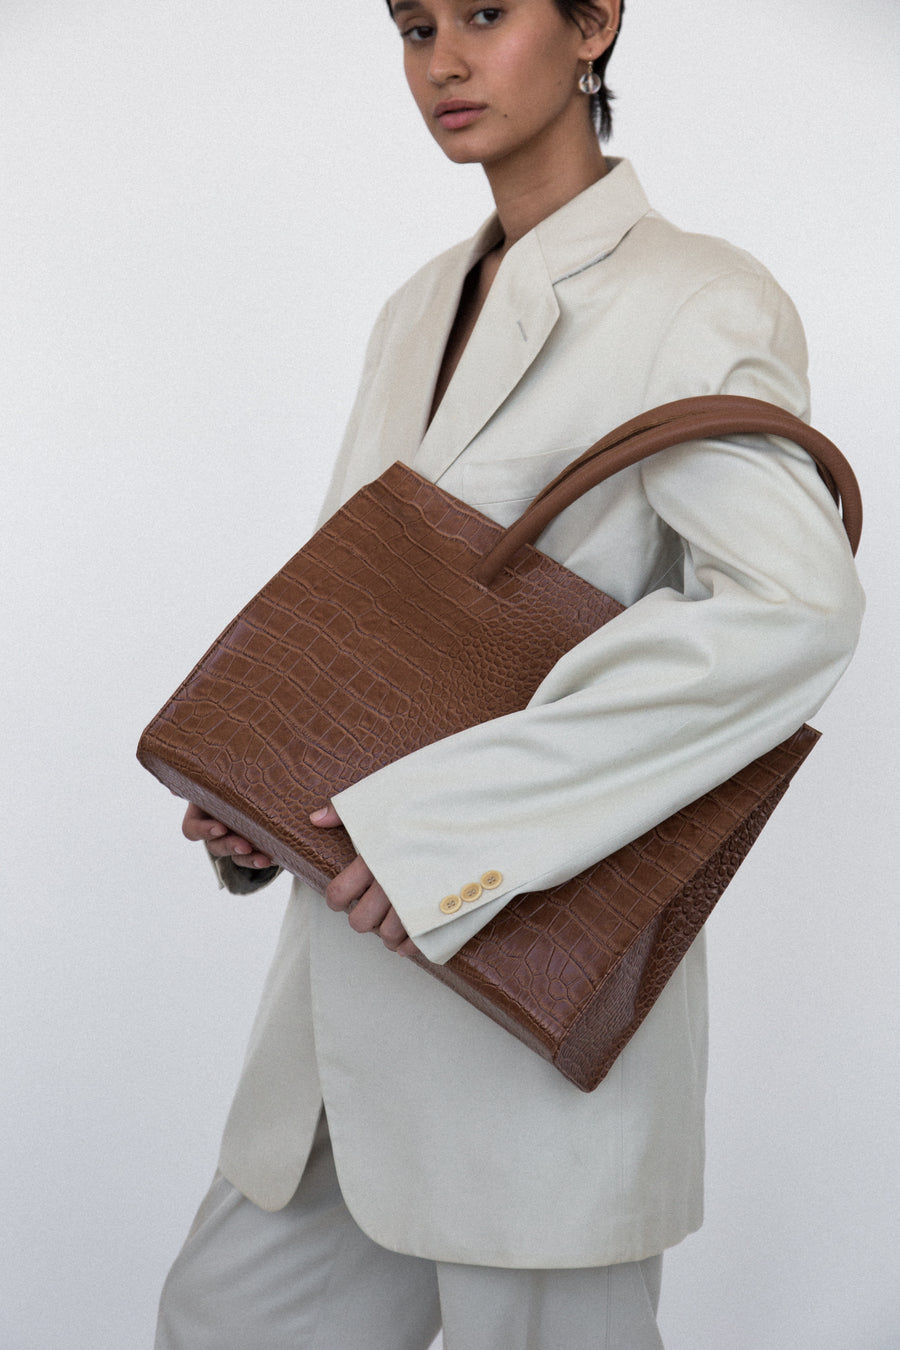 Tan Croc Embossed Genuine Leather Handbags Satchel Bags for Work